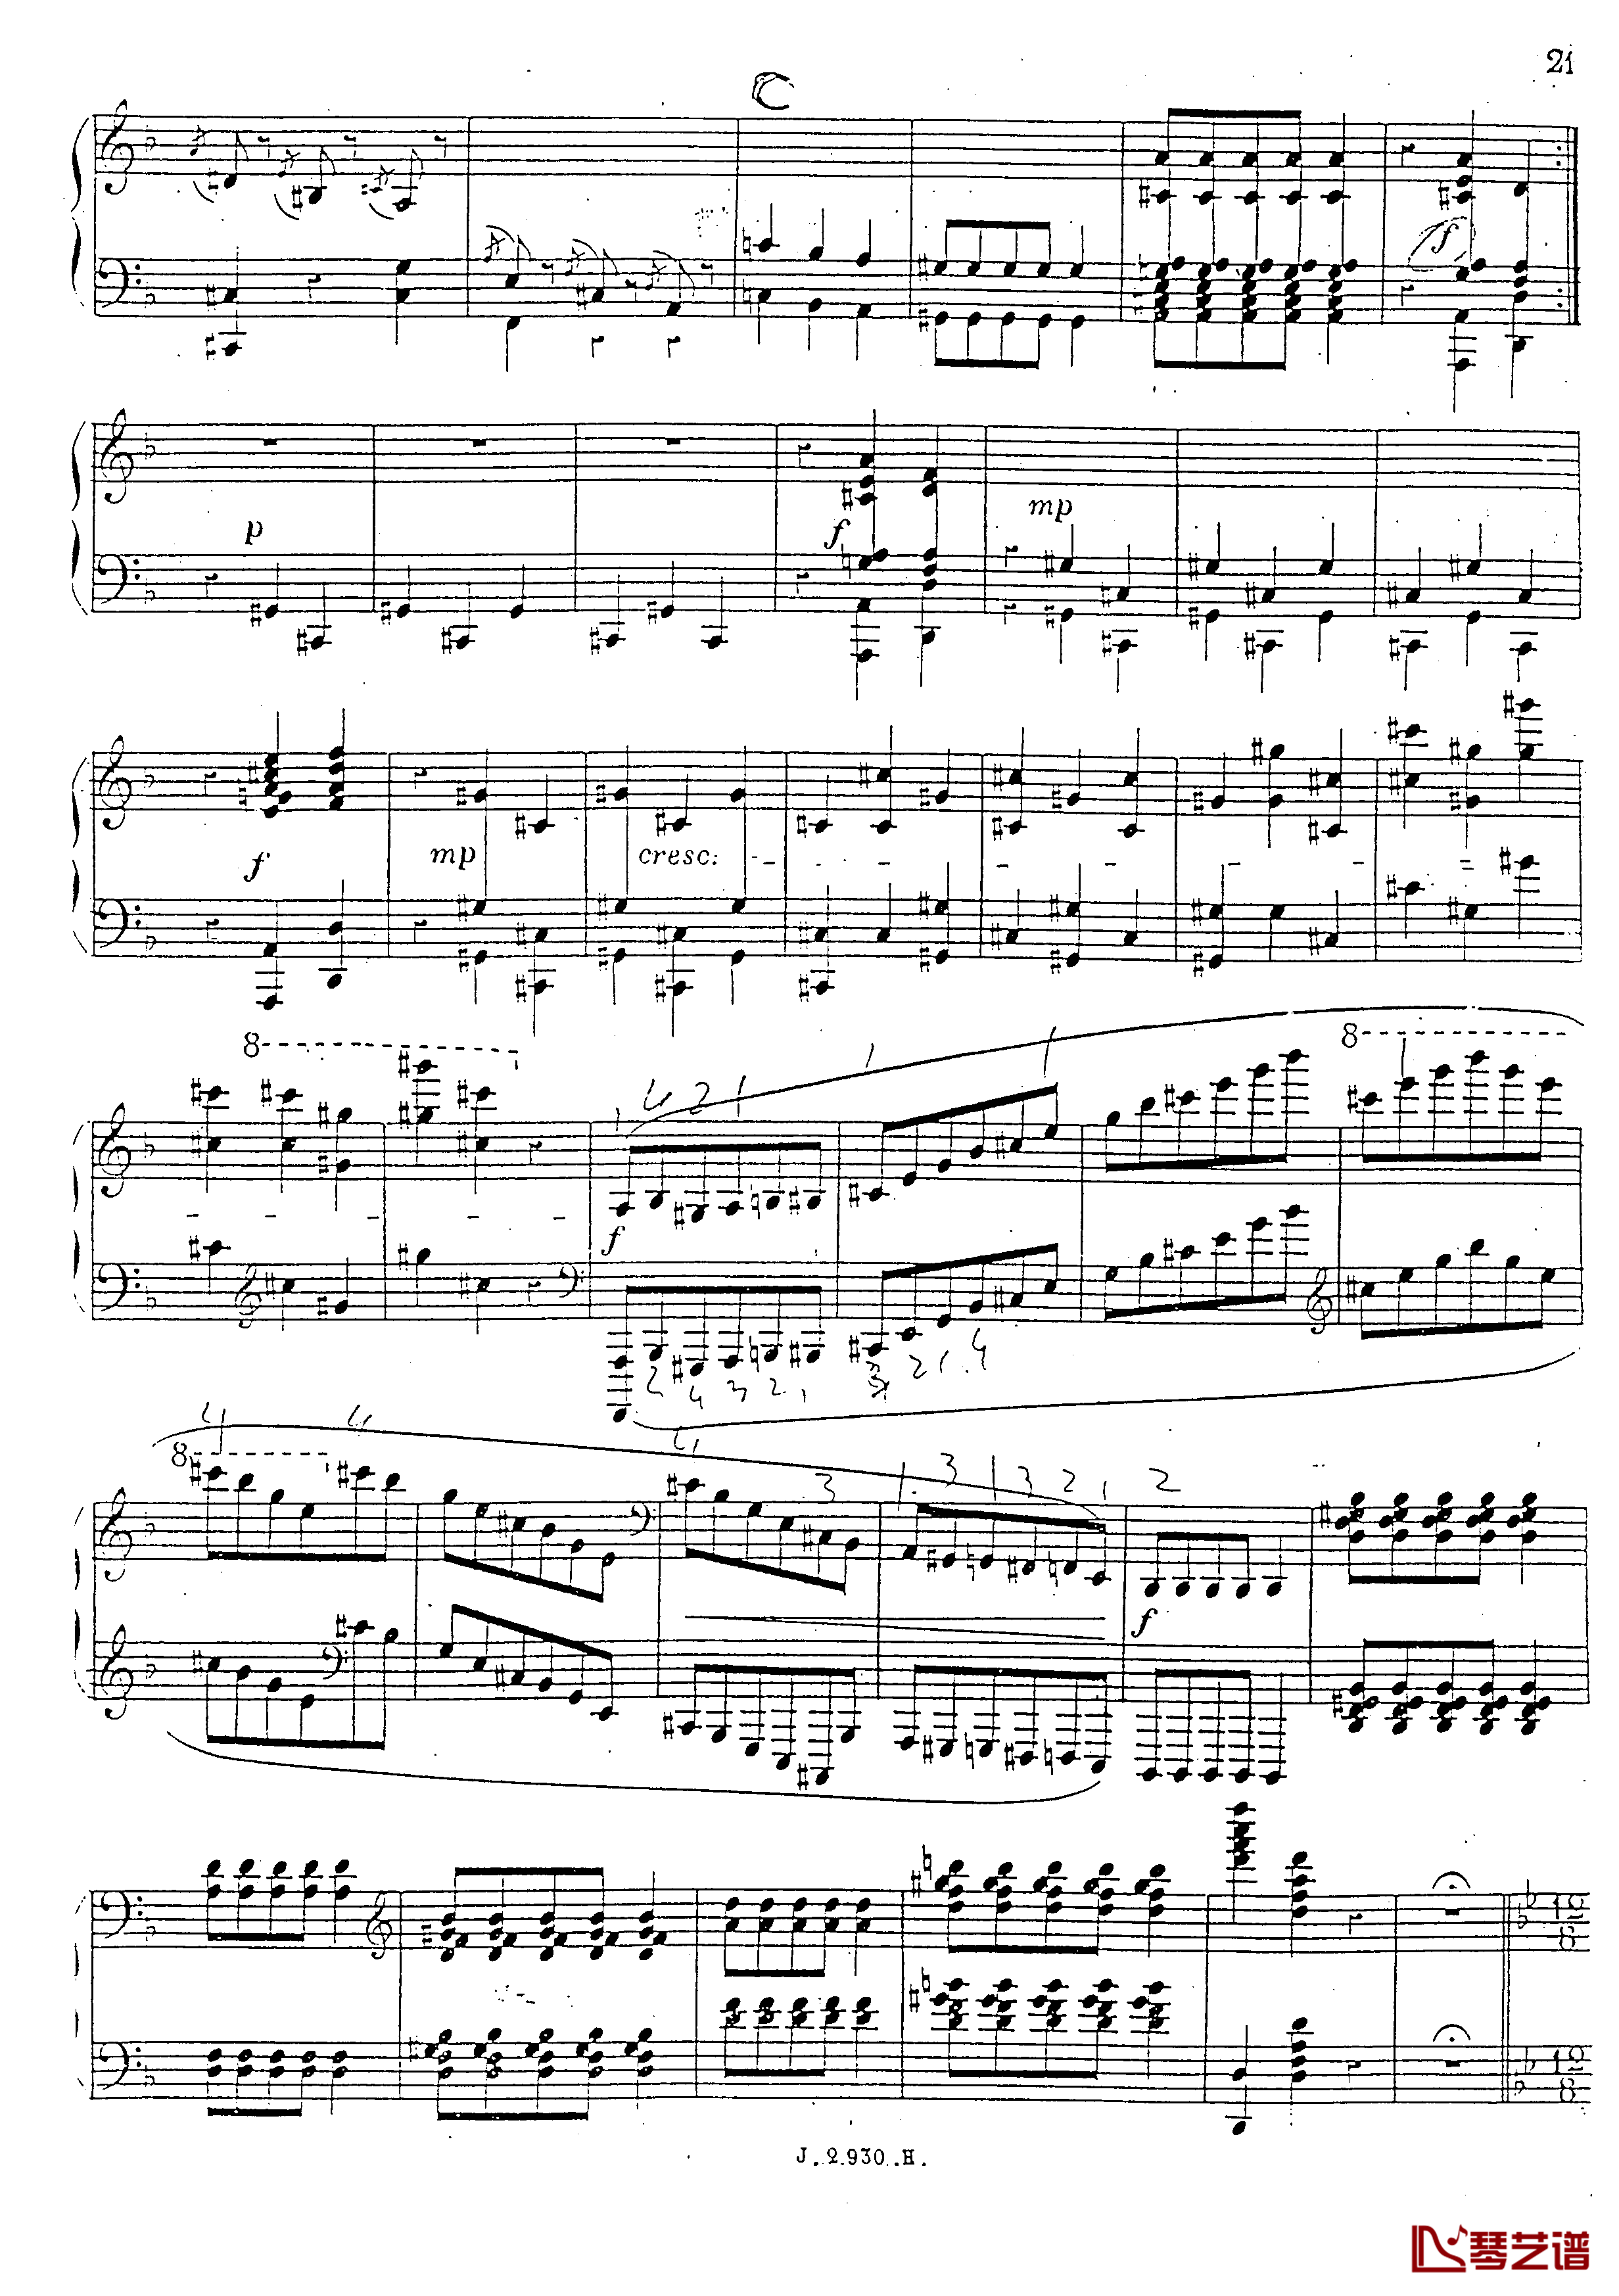 a小调第四钢琴奏鸣曲钢琴谱-安东 鲁宾斯坦- Op.10022